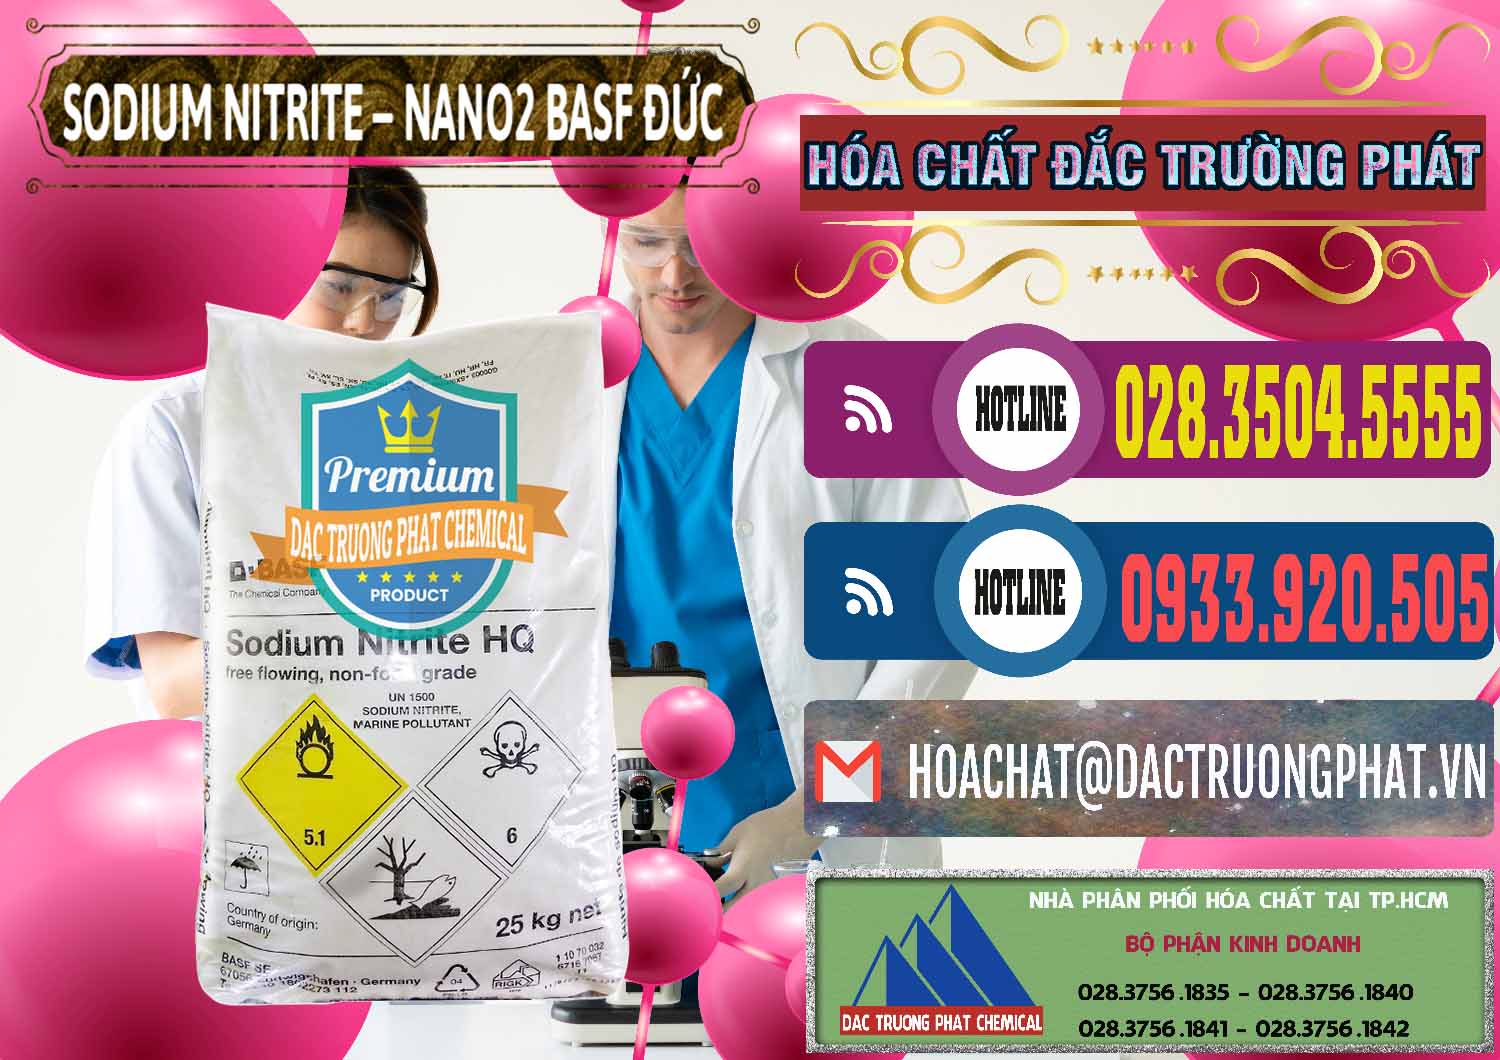 Công ty chuyên bán và phân phối Sodium Nitrite - NANO2 Đức BASF Germany - 0148 - Nơi chuyên bán _ cung cấp hóa chất tại TP.HCM - muabanhoachat.com.vn